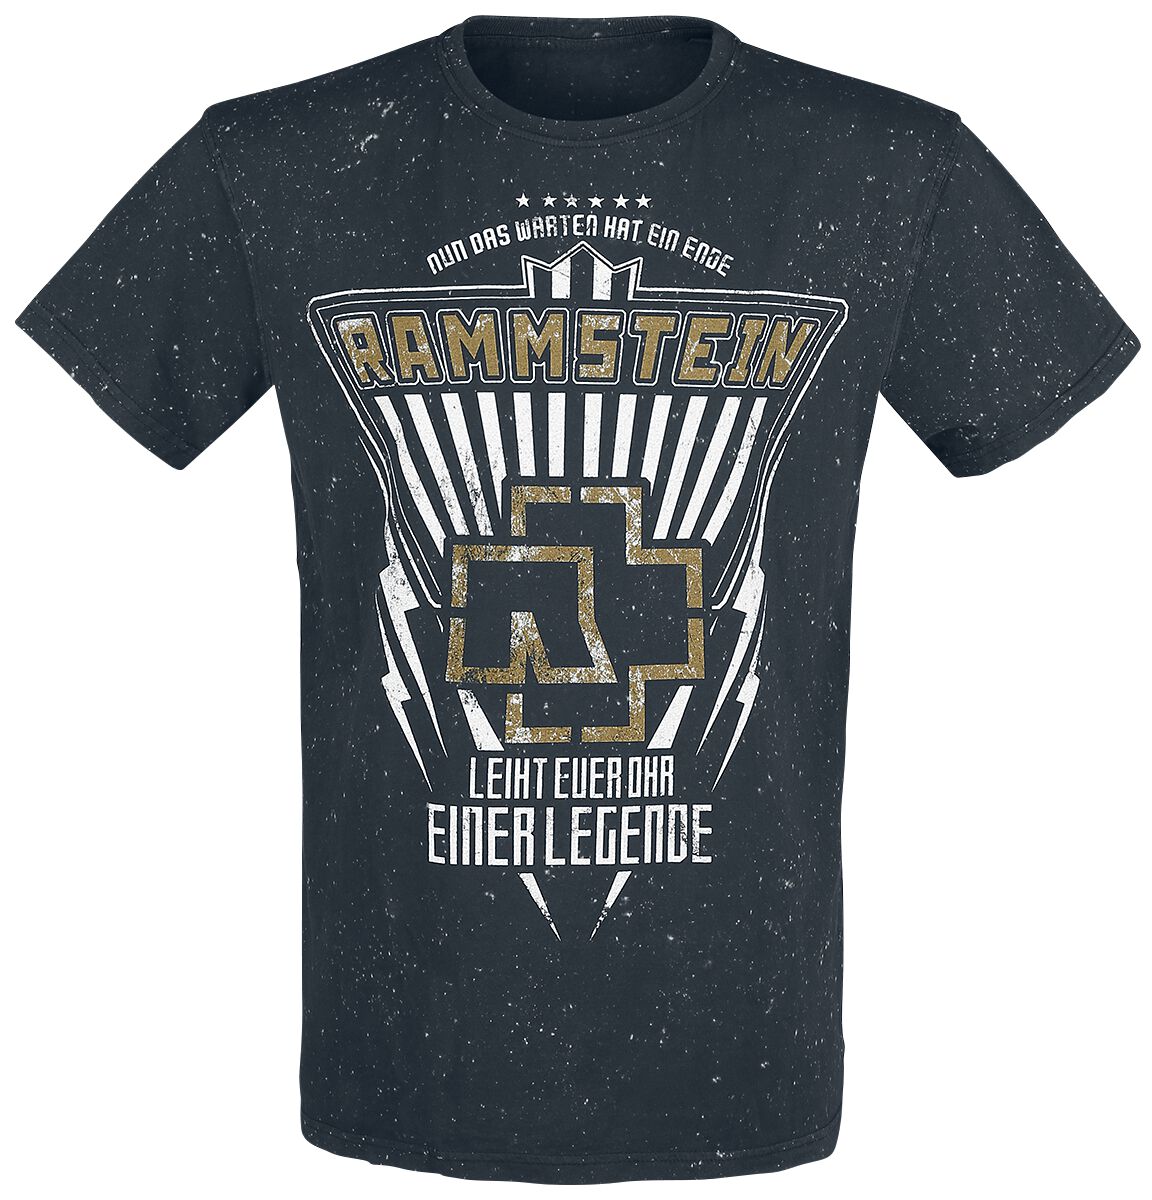 Rammstein T-Shirt - Legende - S bis 4XL - für Männer - Größe 4XL - schwarz  - Lizenziertes Merchandise!